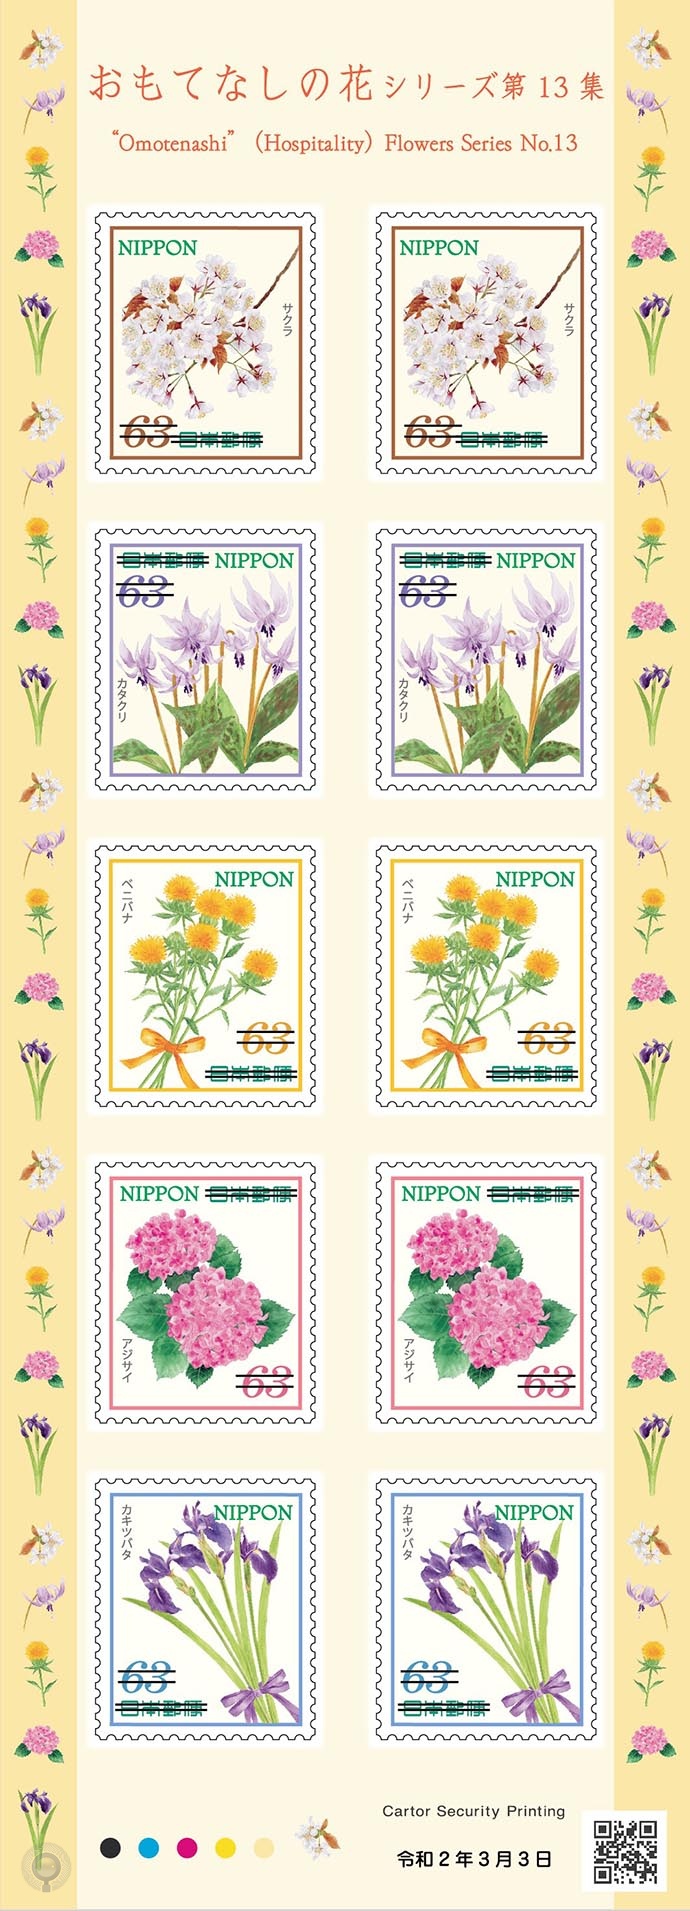 日本3月3日发行 待客花卉 十三 系列邮票 集邮圈